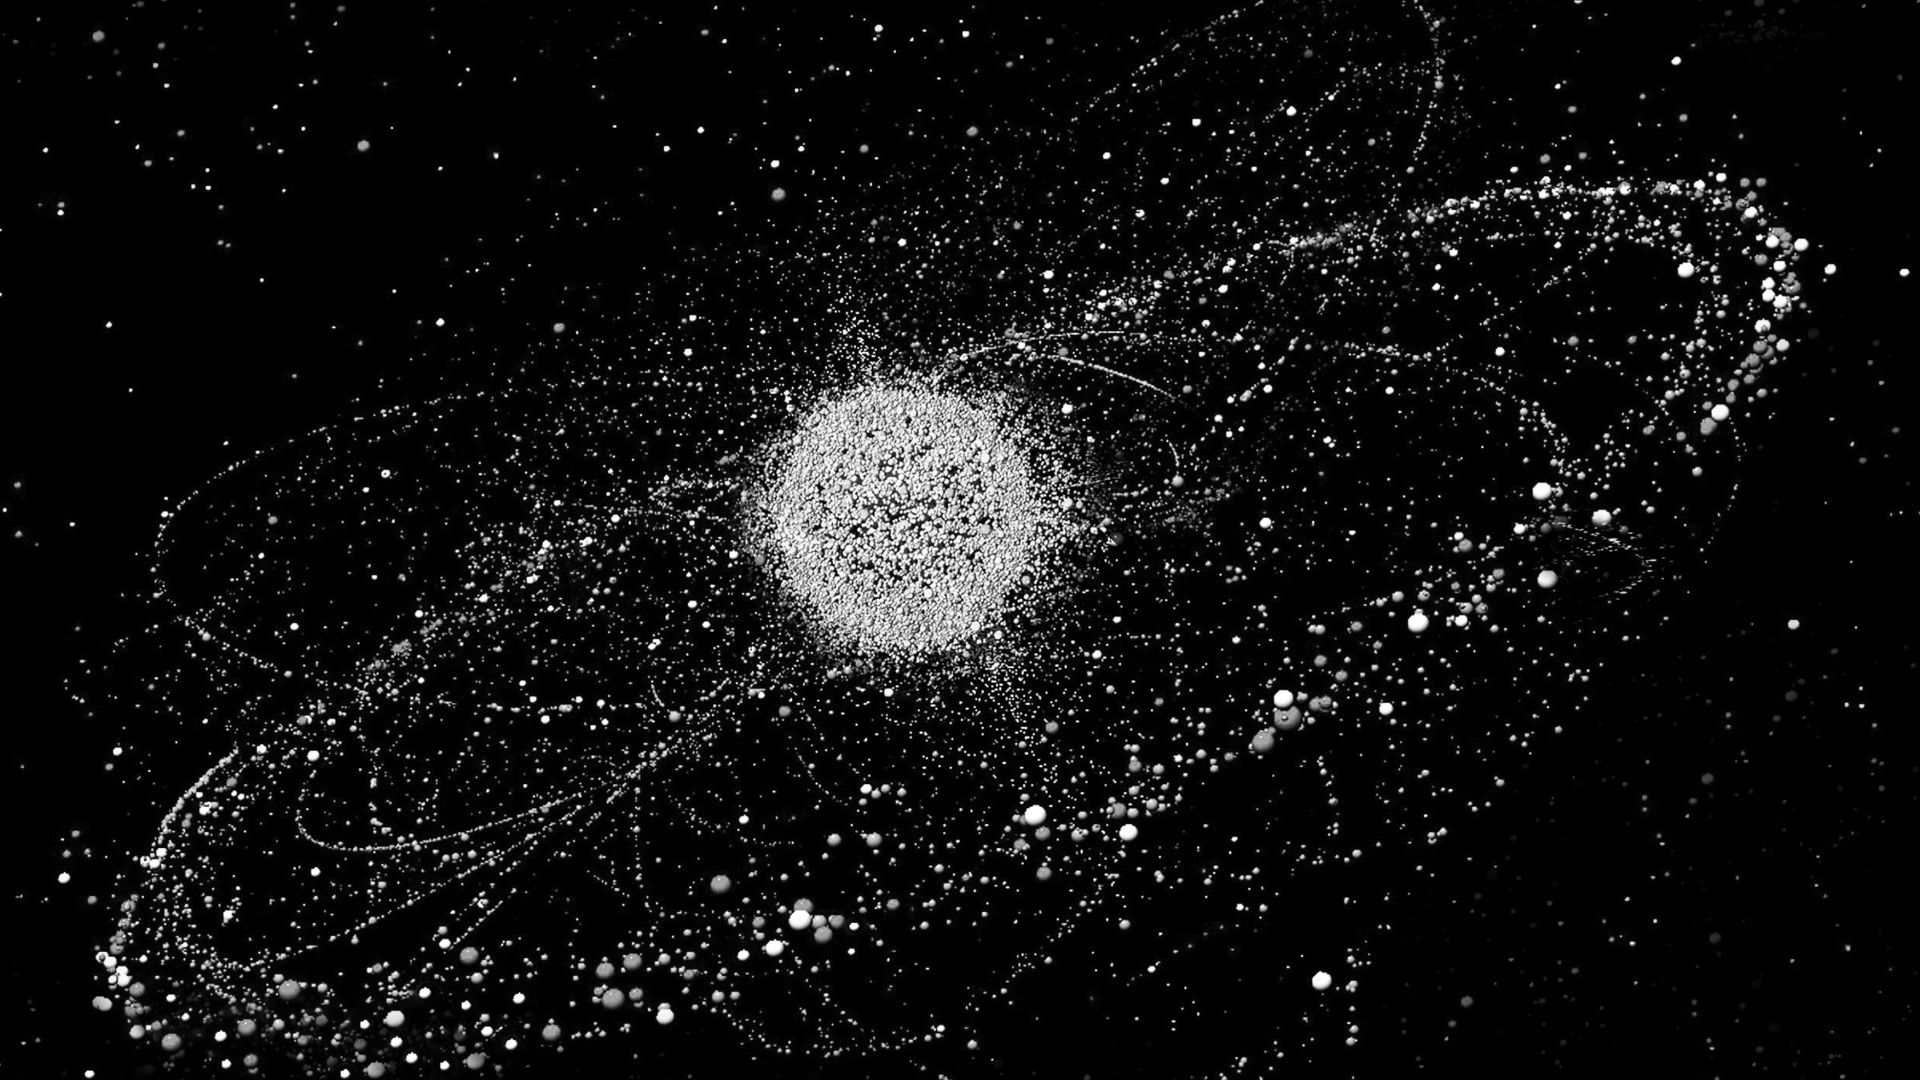 Los 5.000 lanzamientos desde que comenzó la era espacial han dejado millones de fragmentos en torno a la tierra.   Recreación con láser Studio Roosegaarde